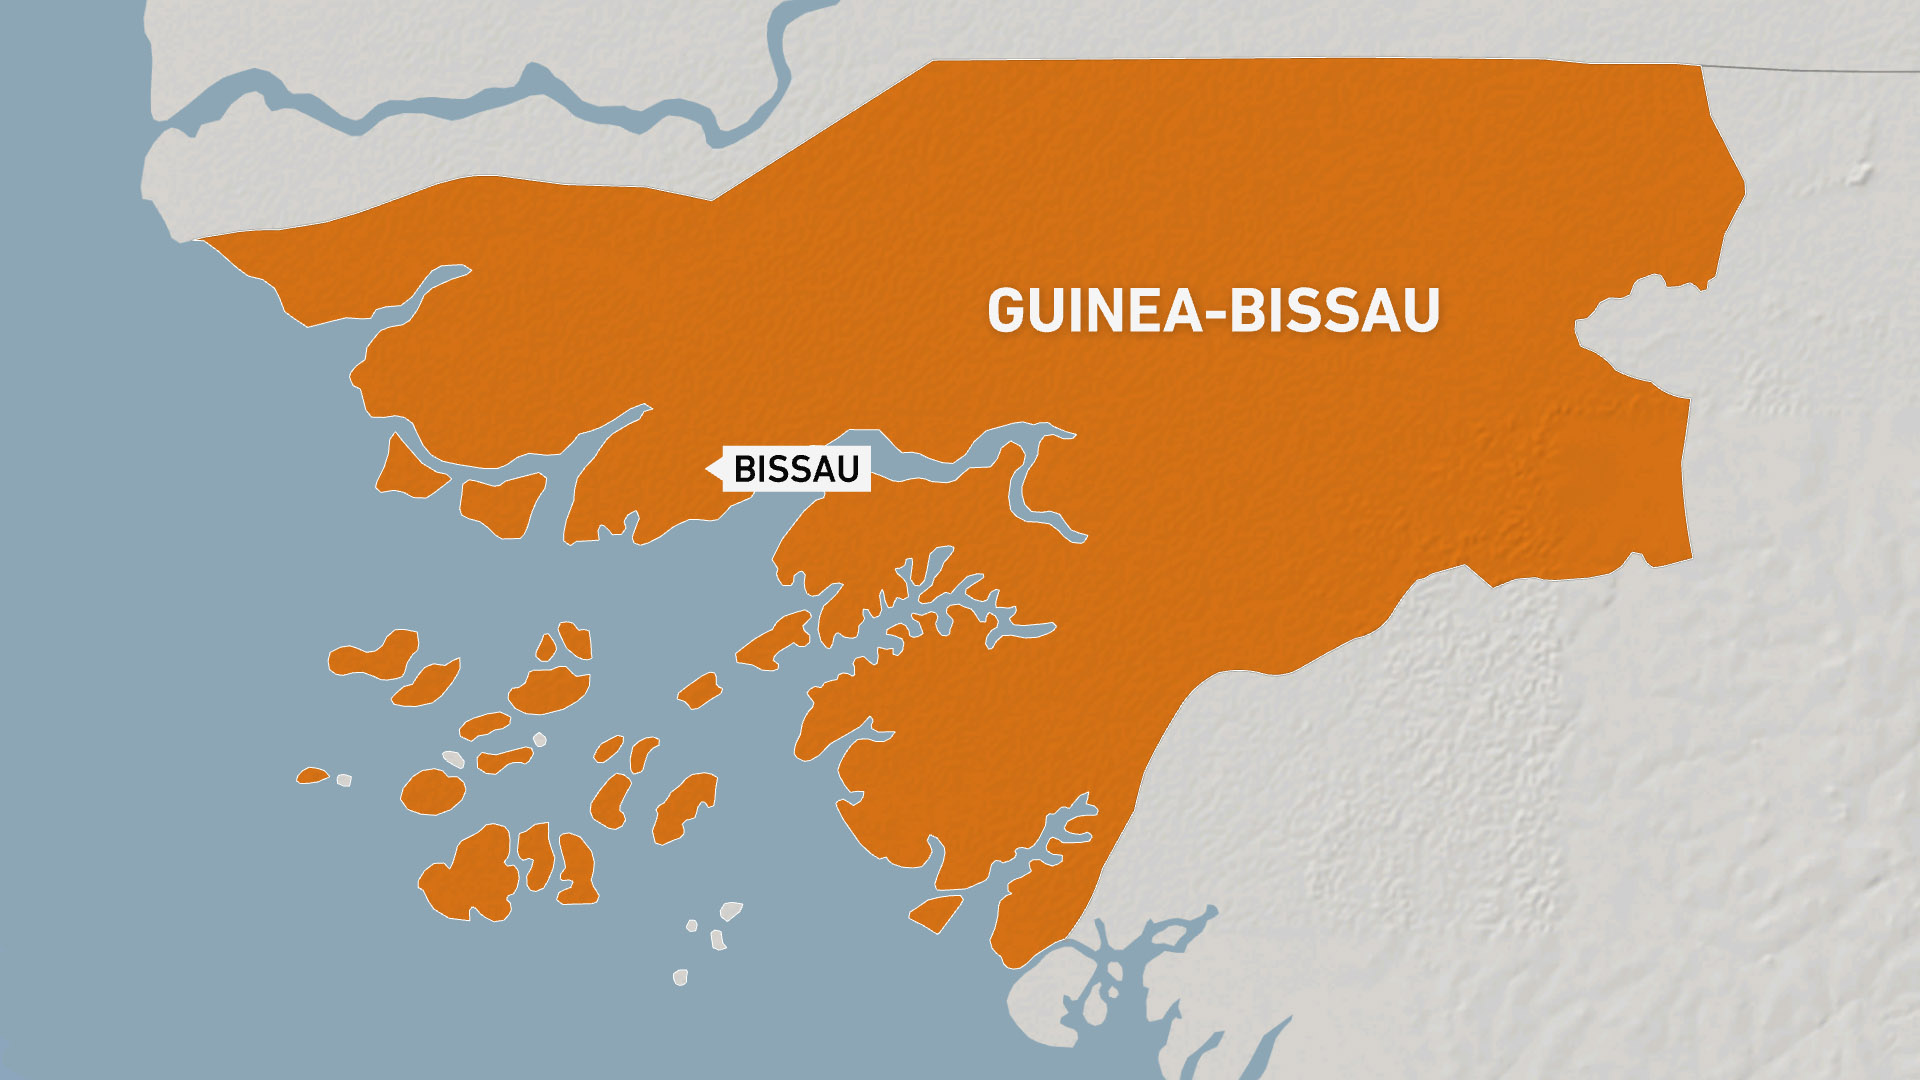 Heavy gunfire heard overnight in Guinea-Bissau capital | Politics News #Heavy #gunfire #heard #overnight #GuineaBissau #capital #Politics #News